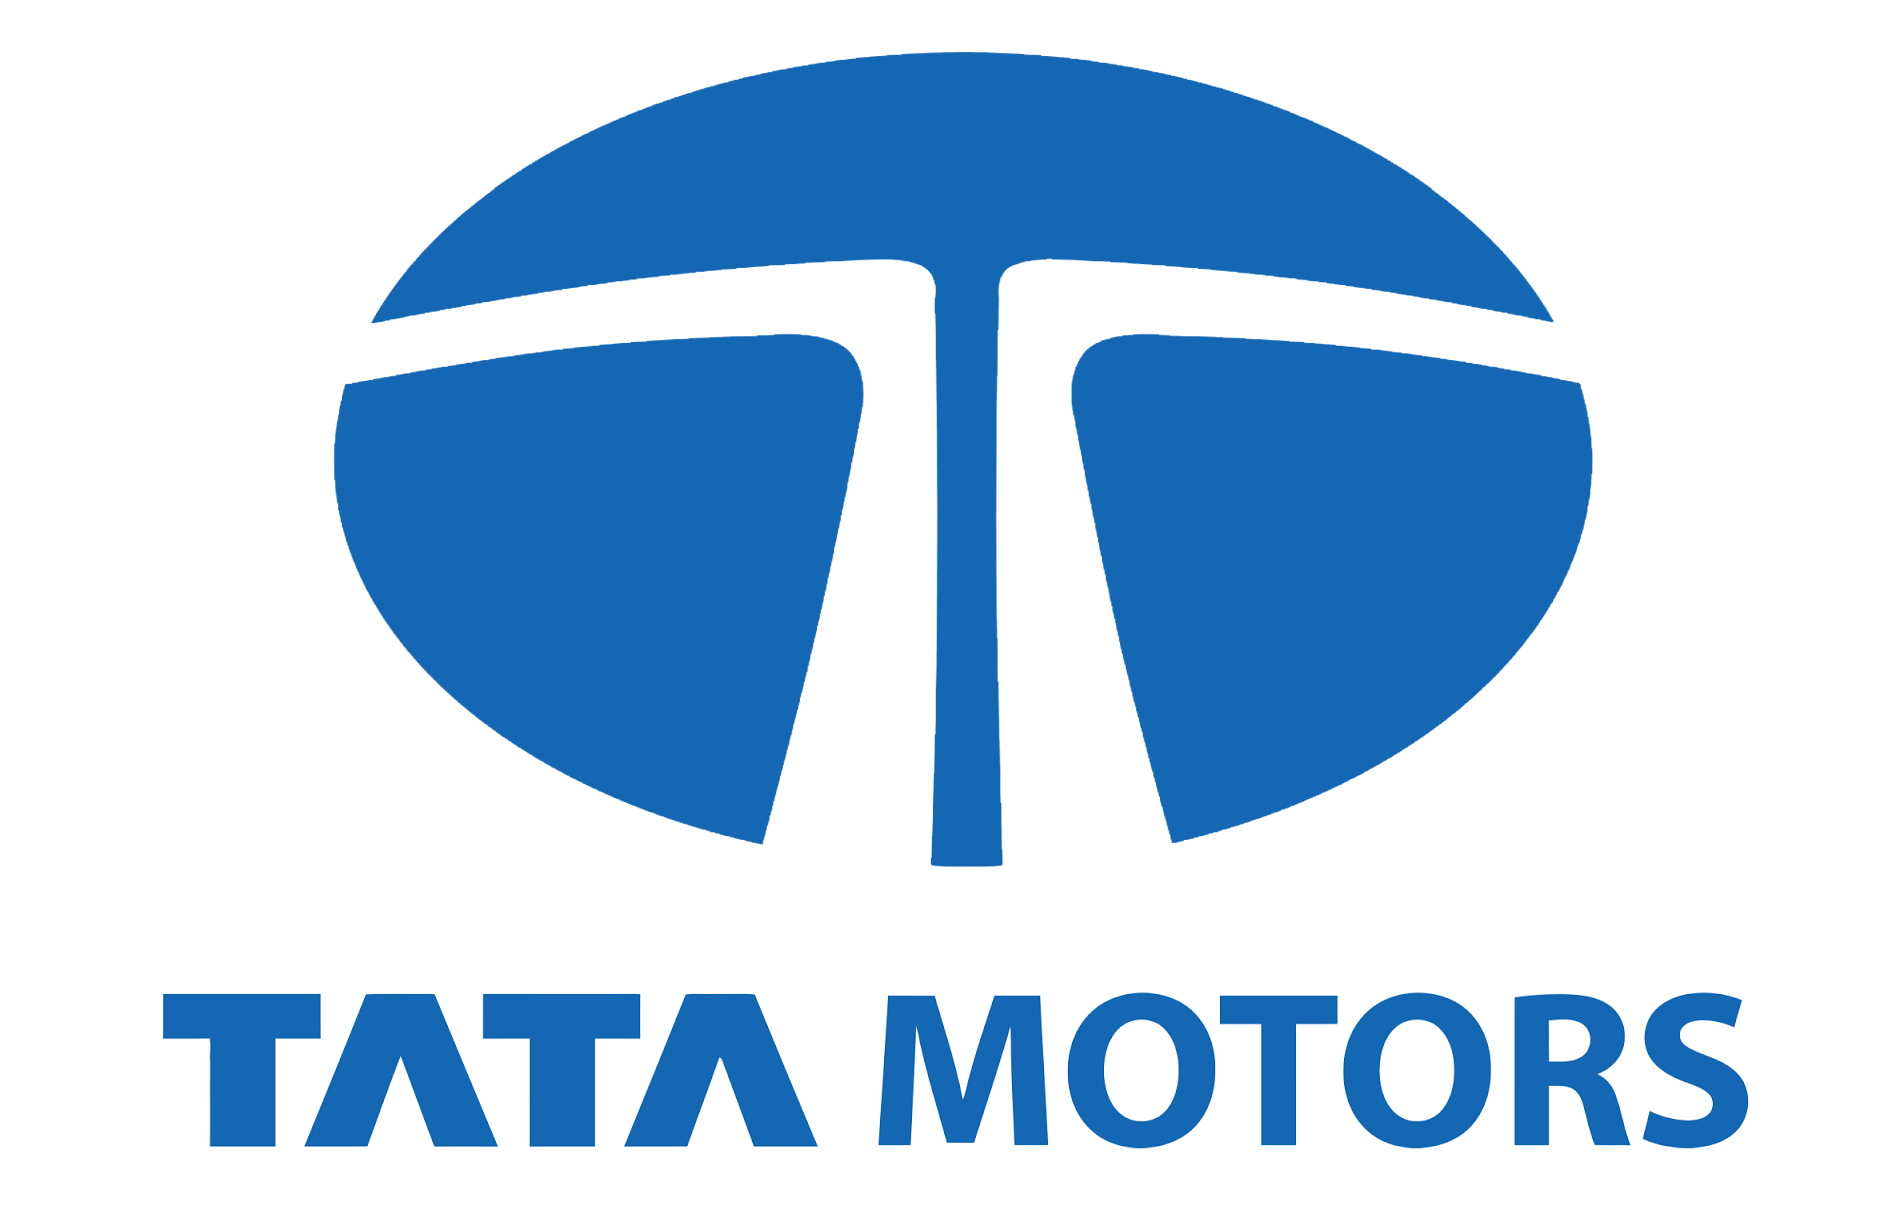 Tata Motors Cars Showroom - Grover Motors|Show Room|Automotive